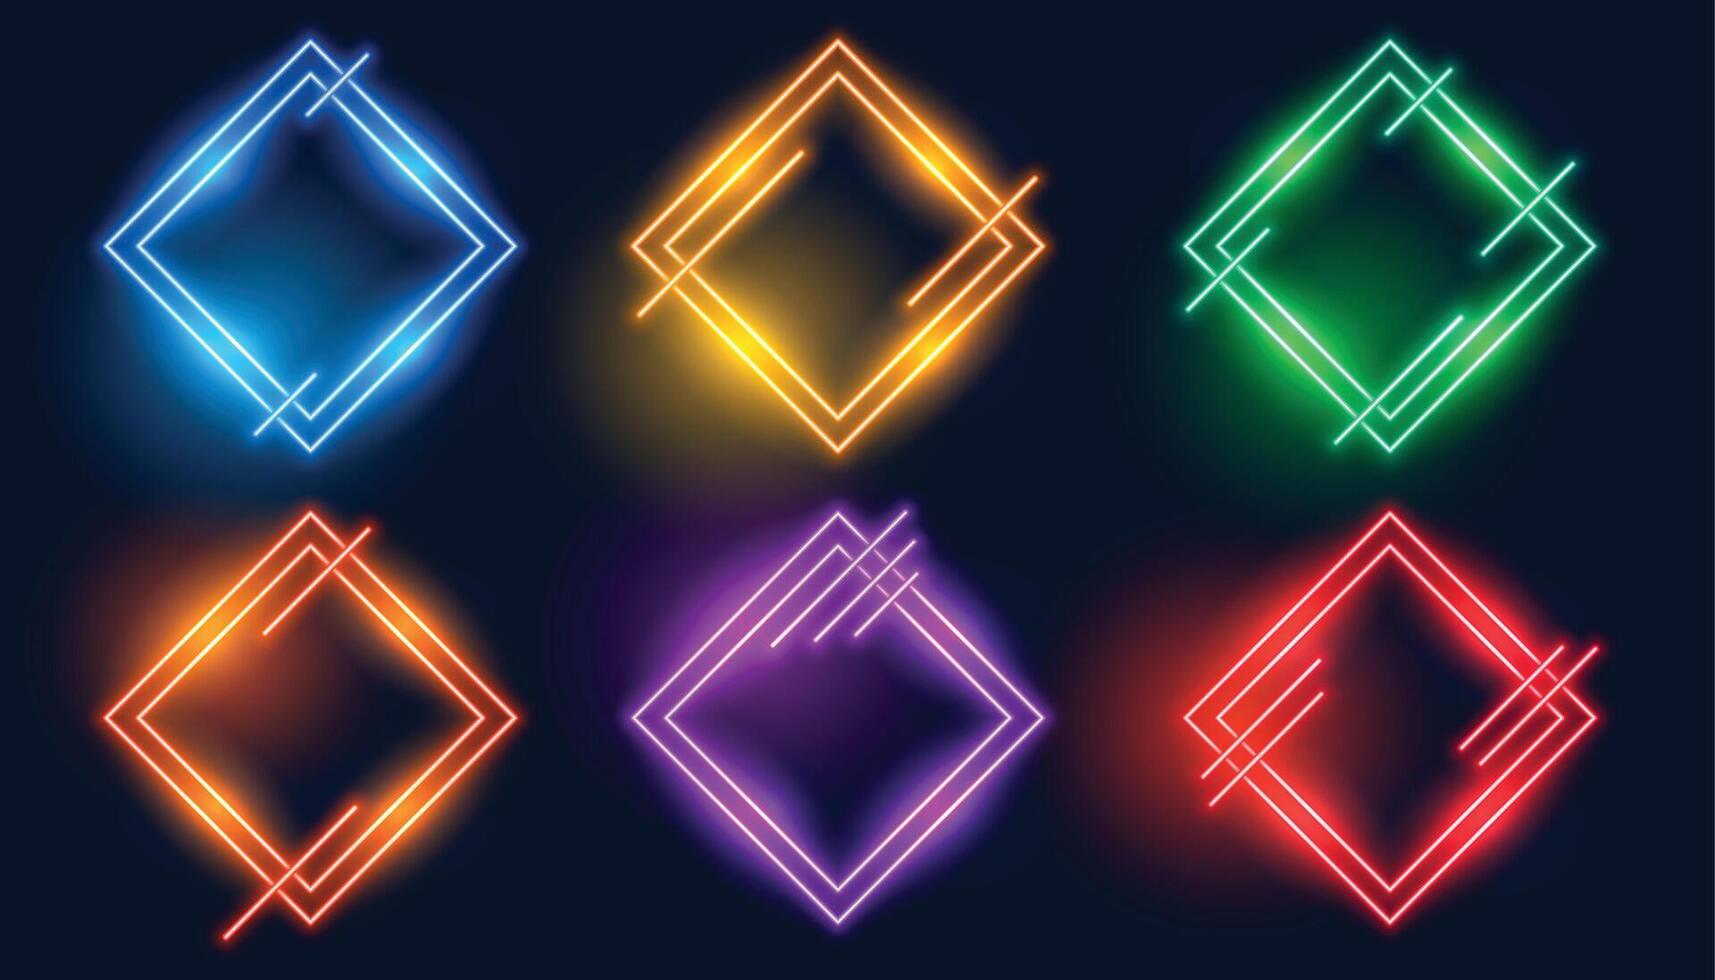 bunt Rhombus oder Diamant gestalten Neon- Frames einstellen vektor